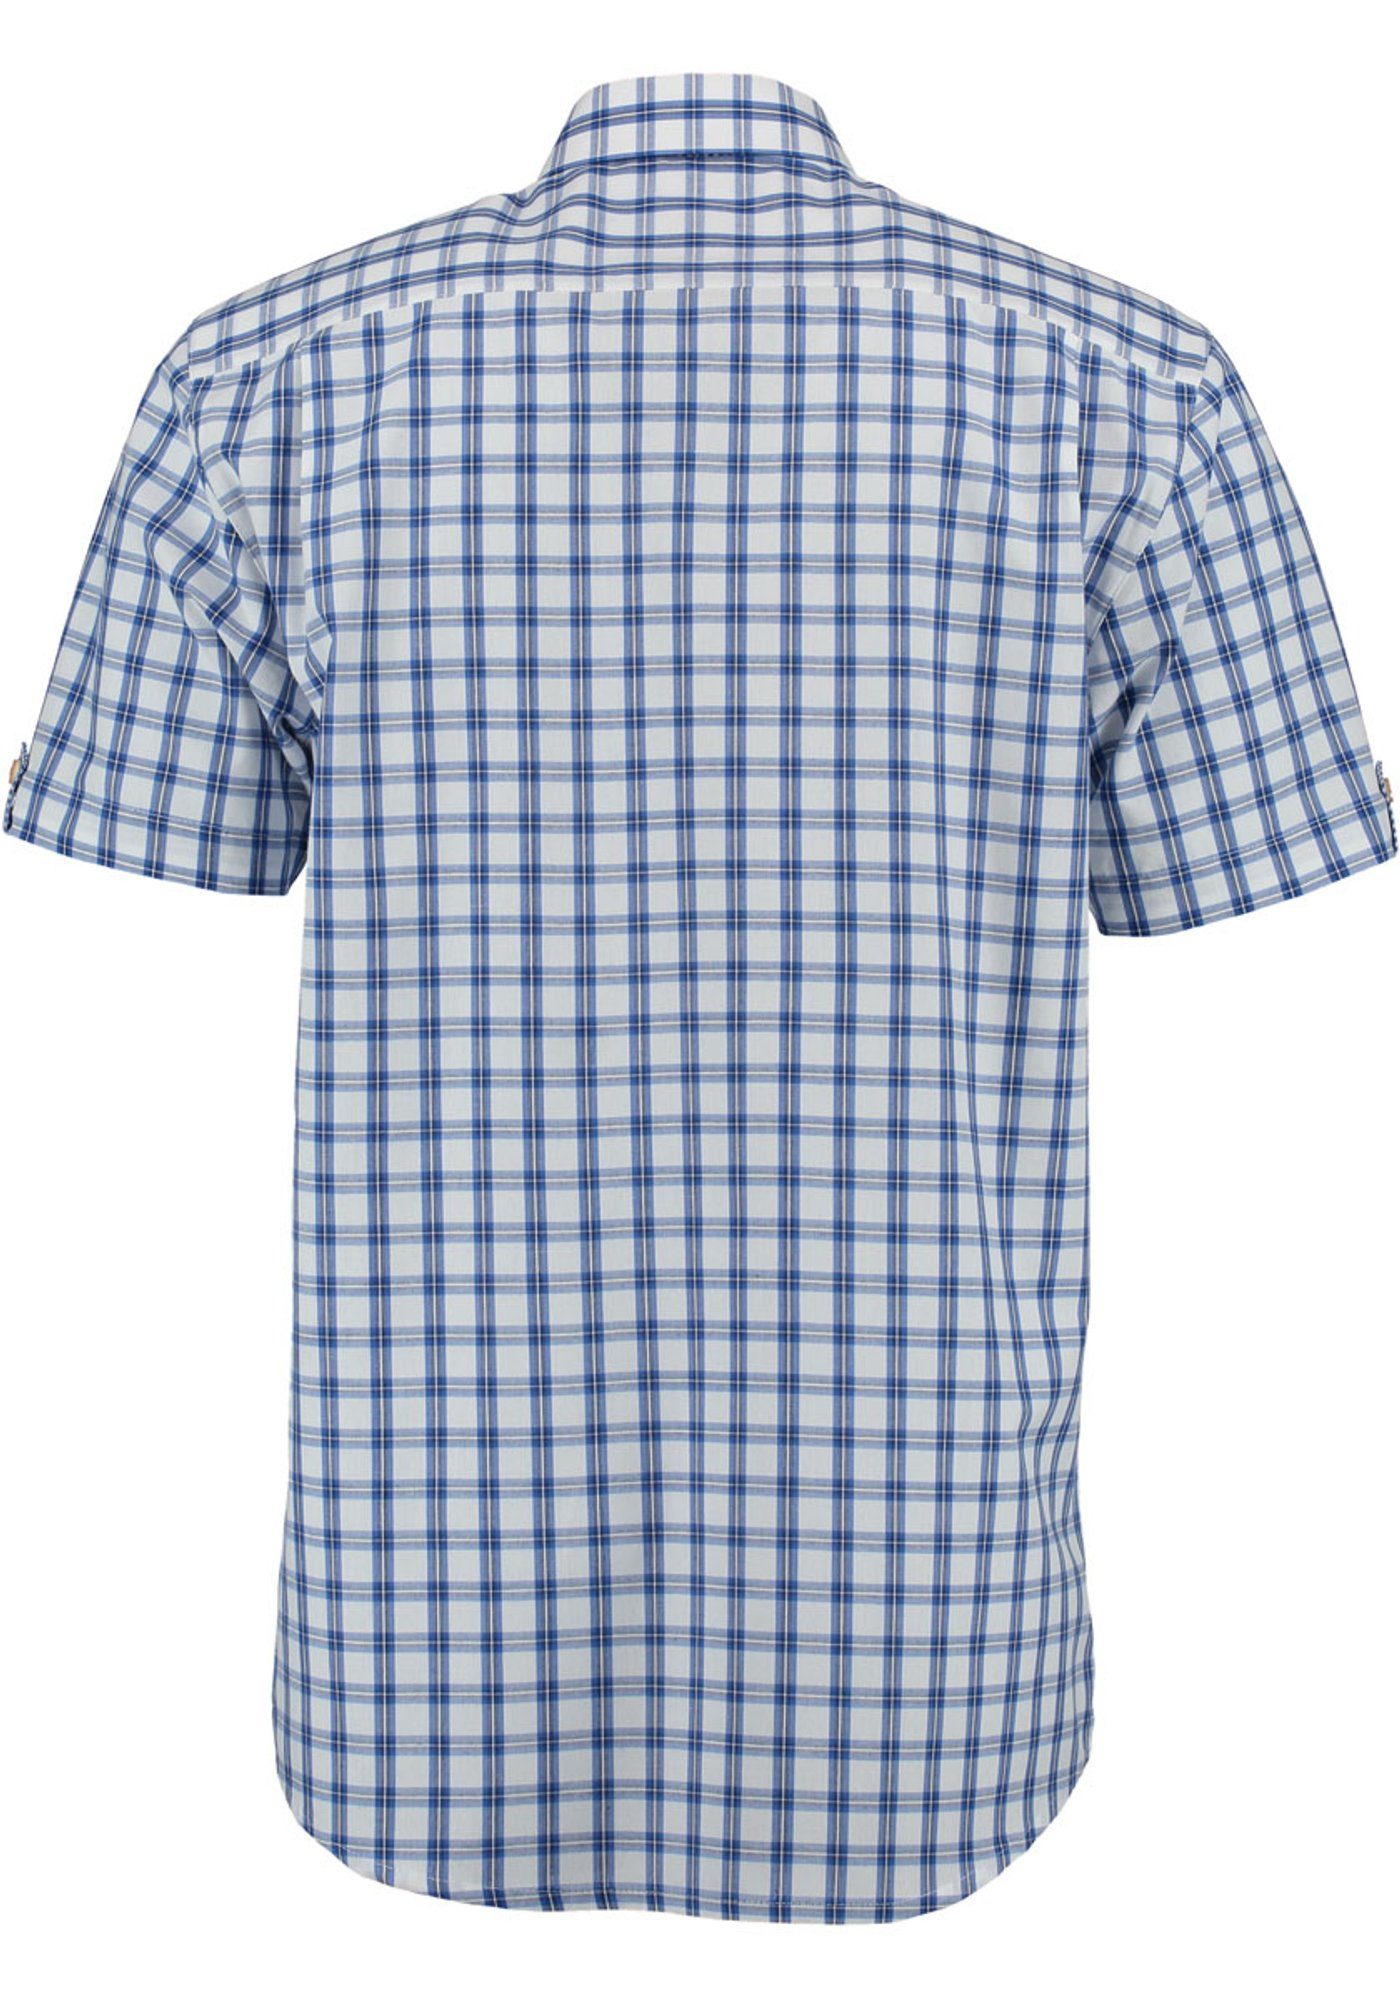 OS-Trachten aufgesetzter Kurzarmhemd mit Trachtenhemd Brusttasche kornblau Itunon Herren